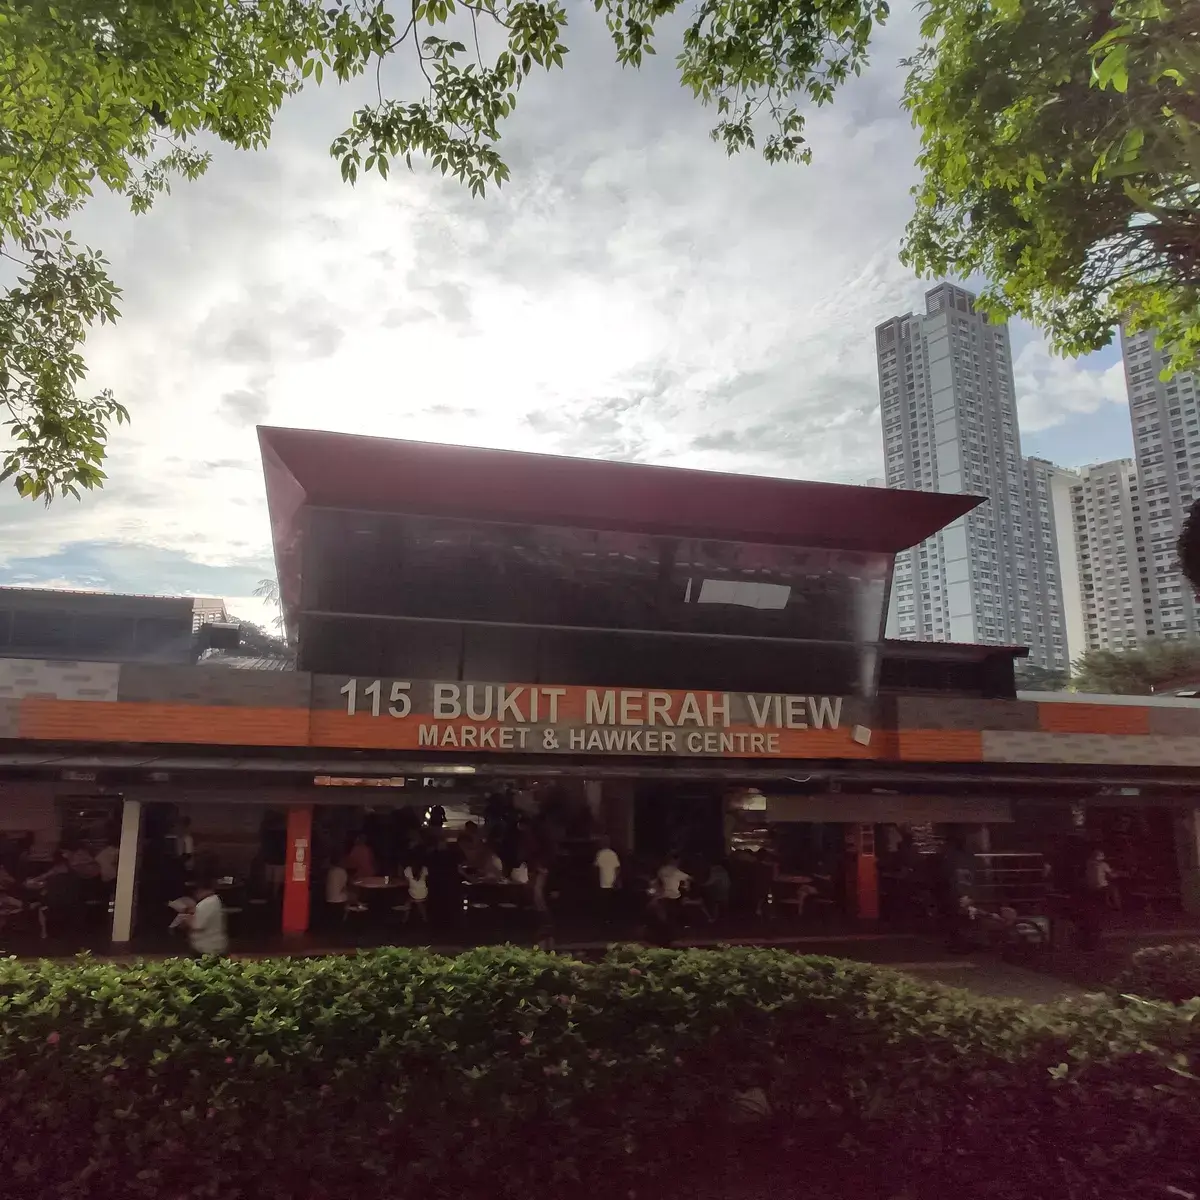 Guide: Bukit Merah View Food Centre (Singapore)